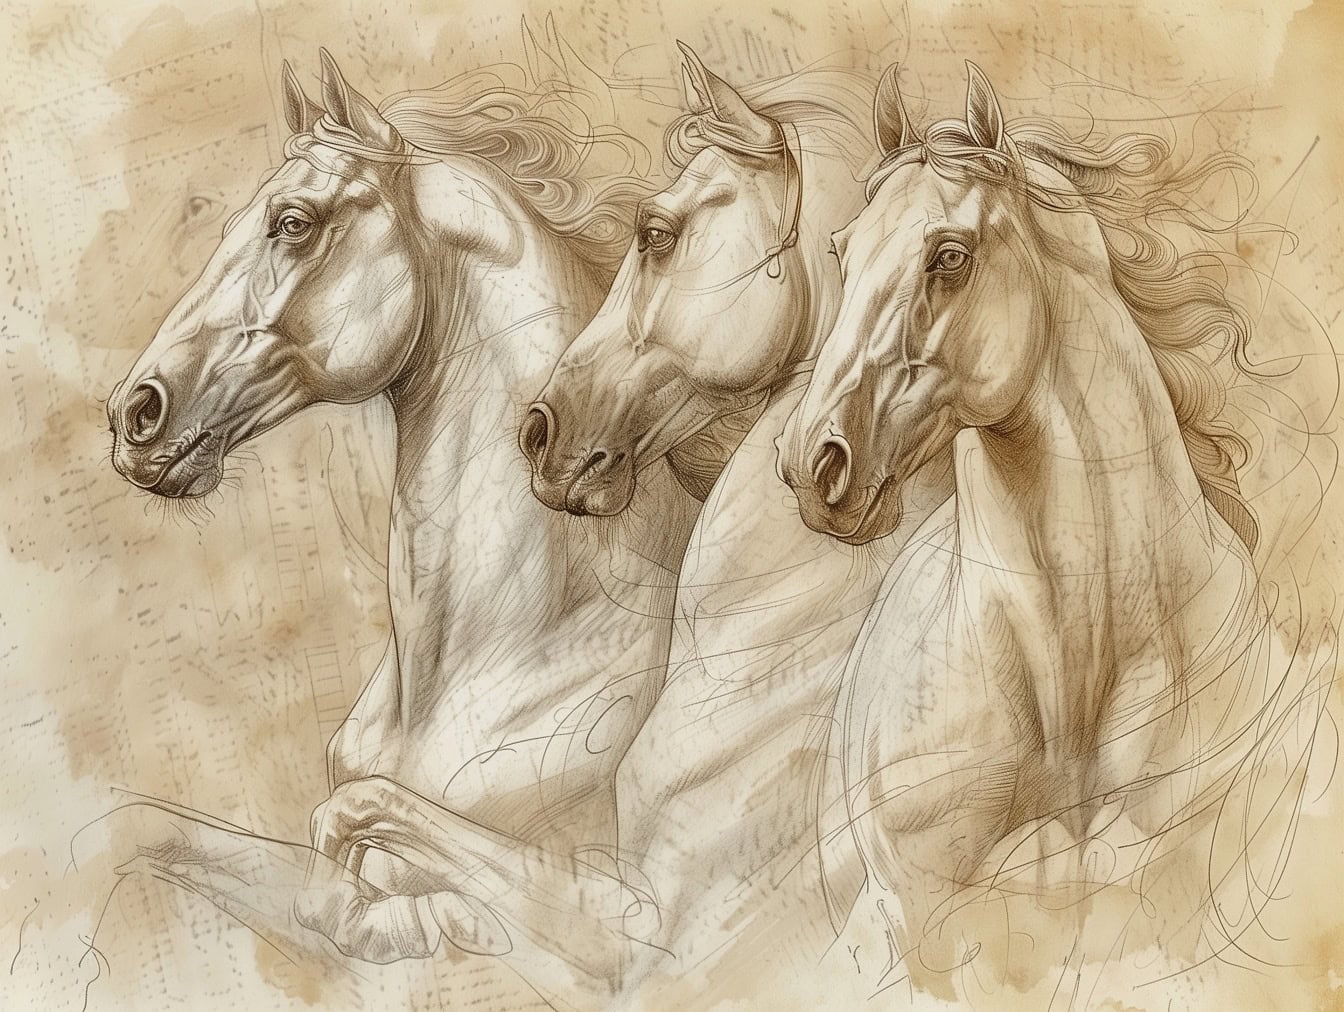 Un disegno a mano di cavalli su vecchia carta semitrasparente sbiadita in uno stile di opere d’arte di artisti medievali